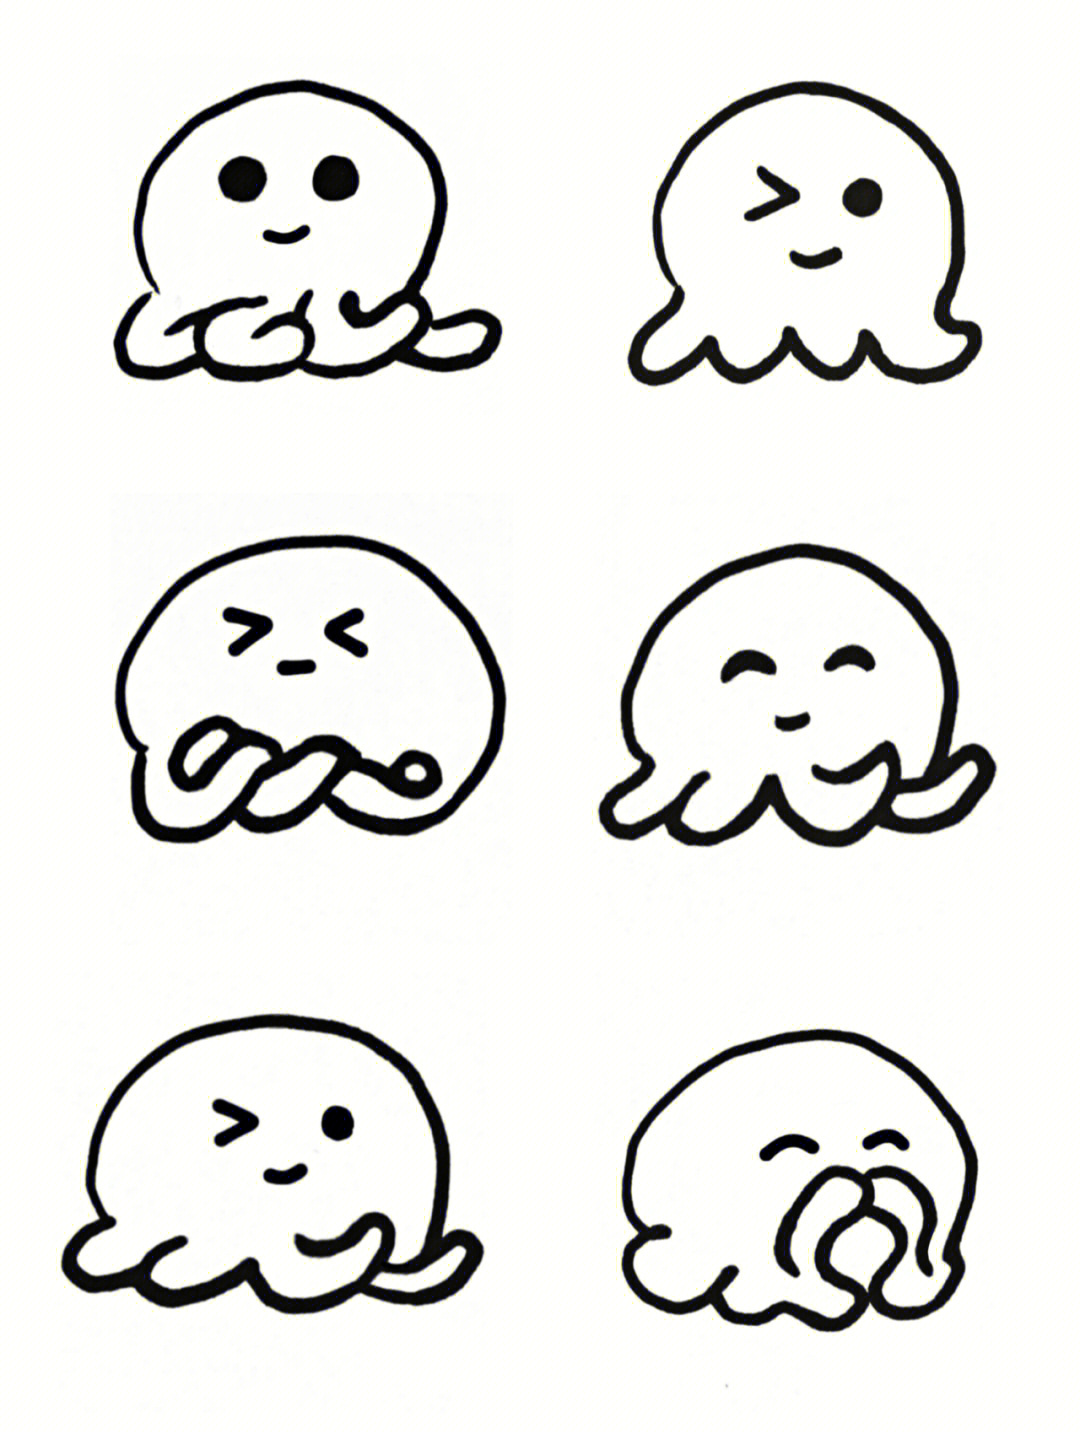 极简手绘表情动物可爱小章鱼